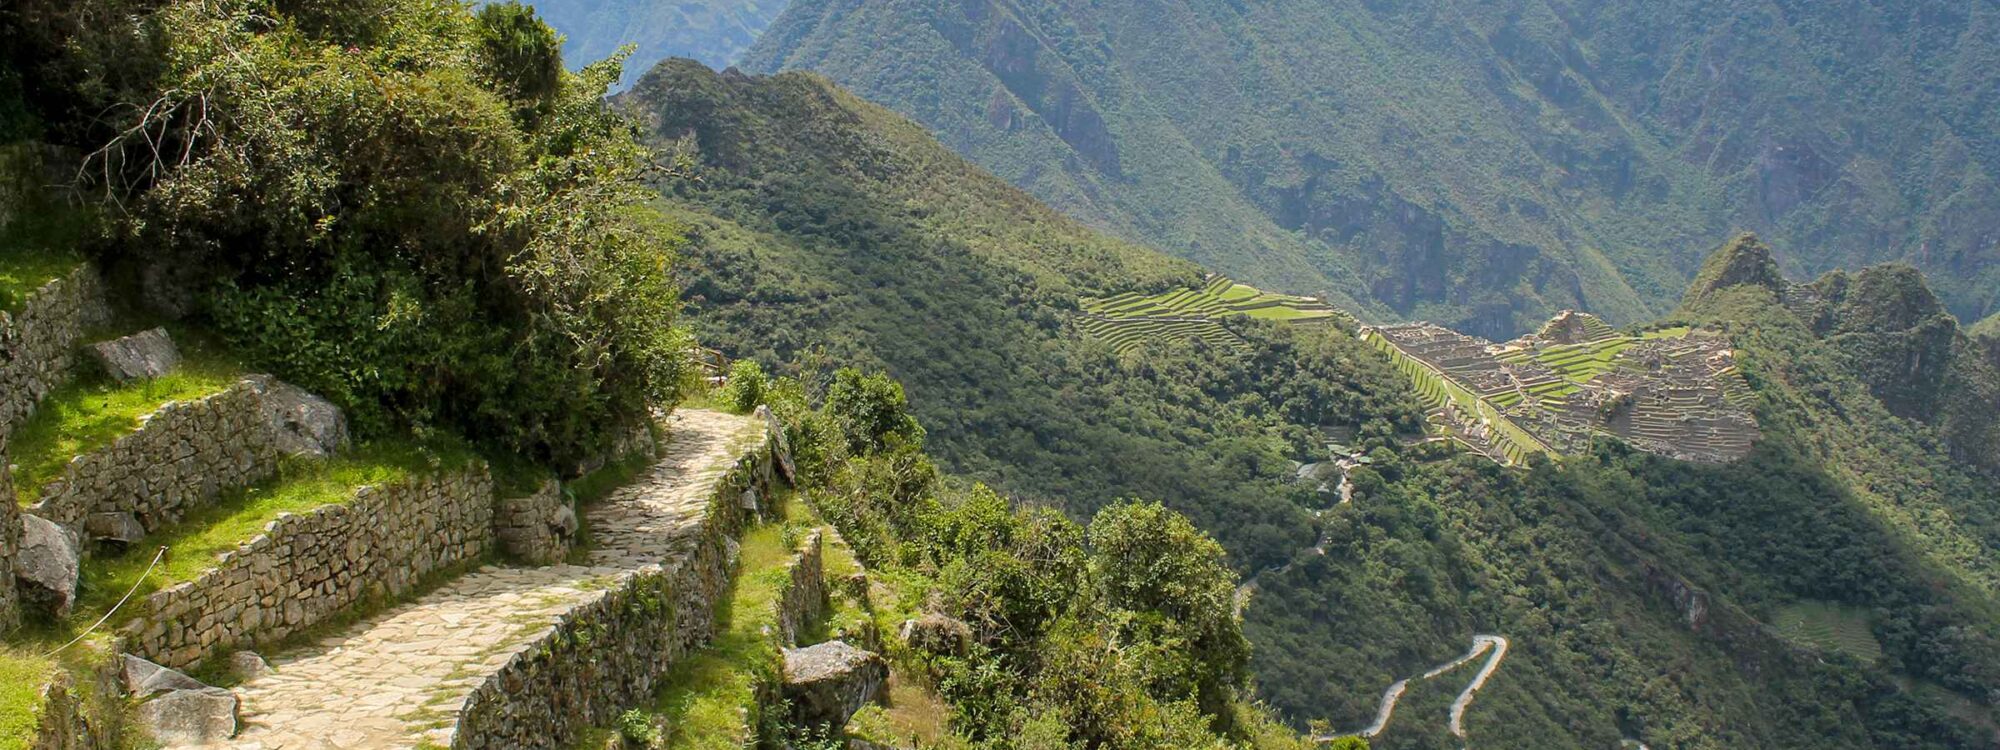 1 Day Inca Trail Hike